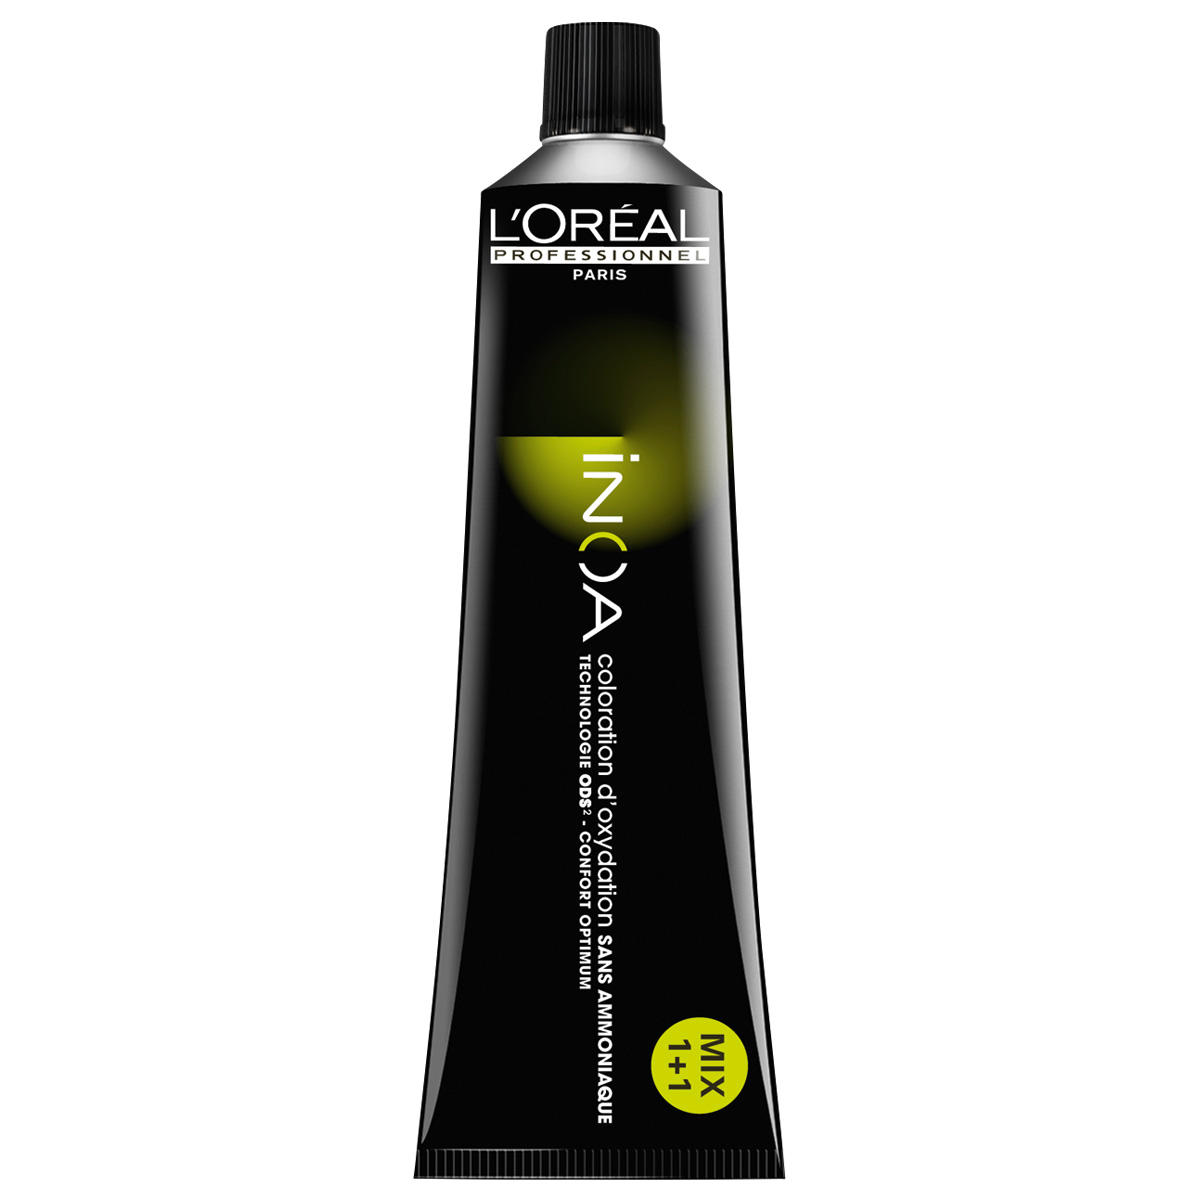 L'Oréal Professionnel Paris Coloration 2 Zeer donkerbruin, tube 60 ml